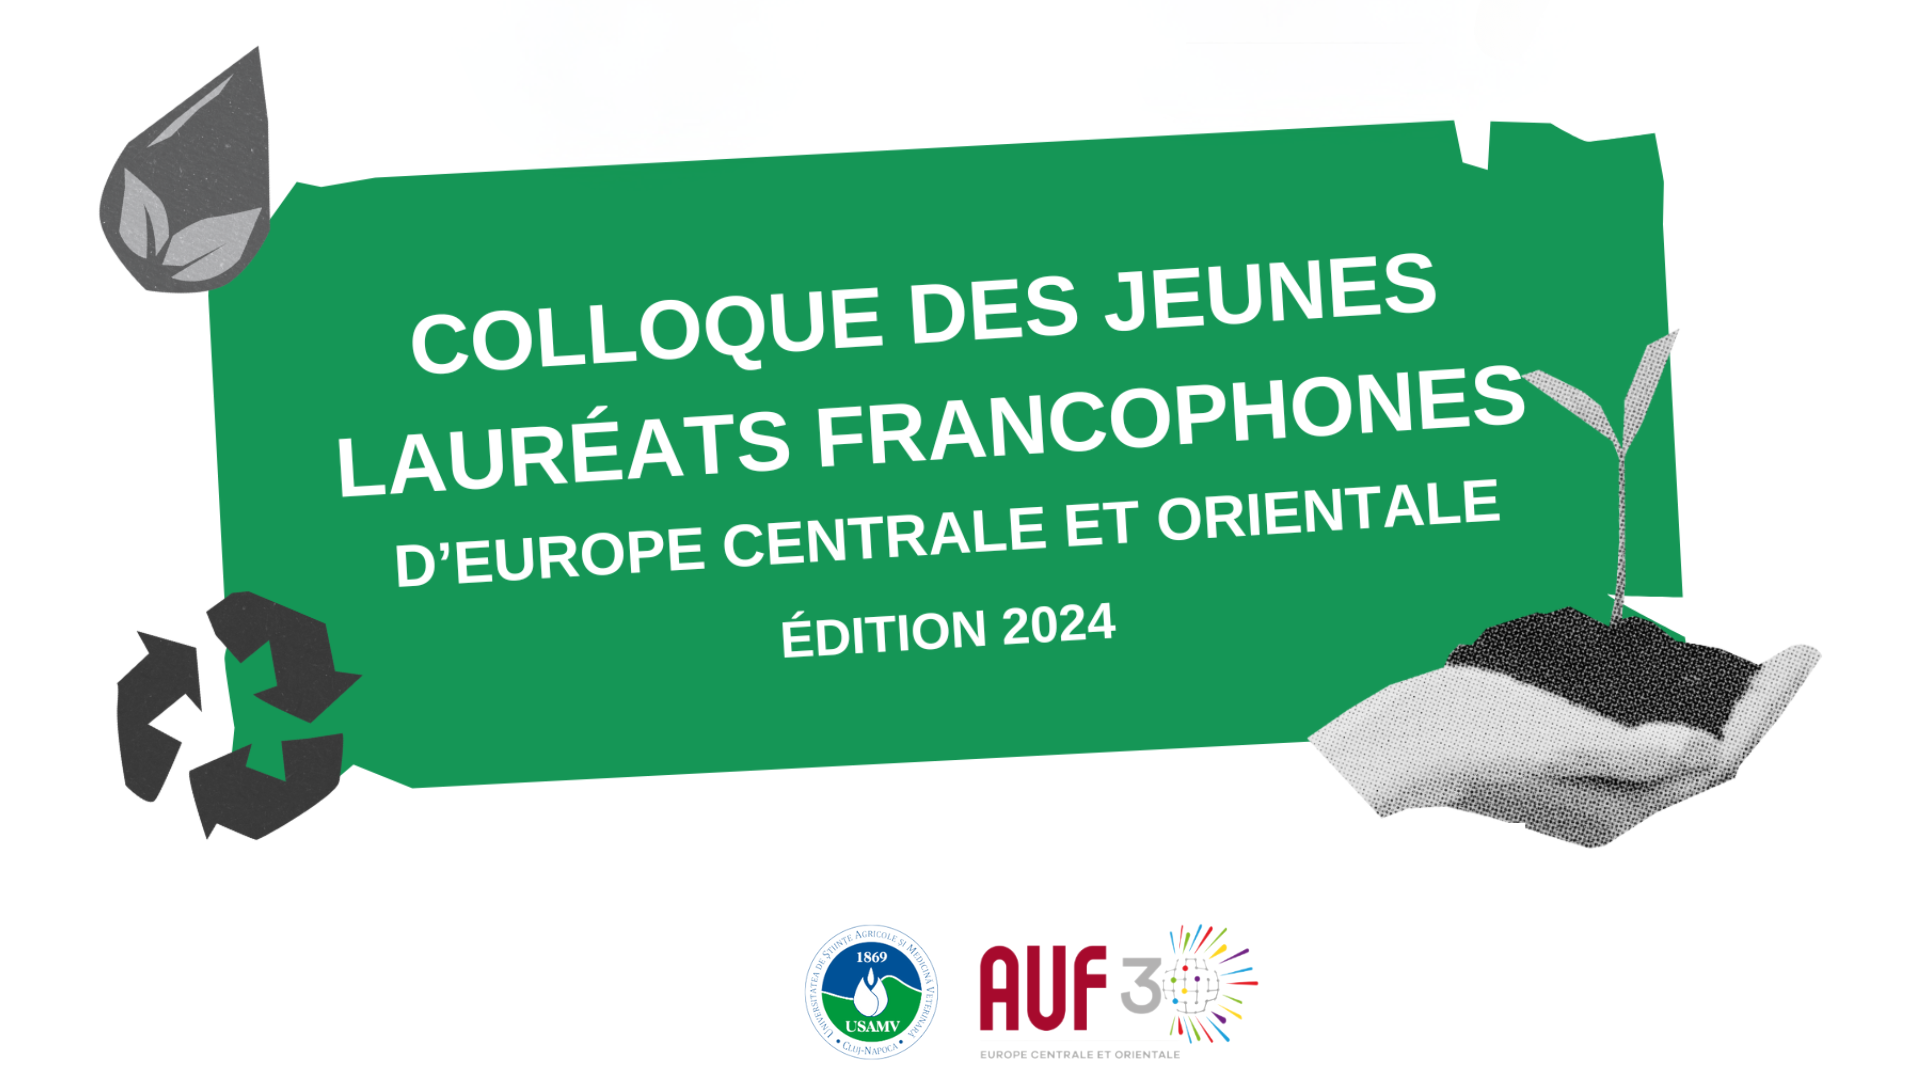 Colloque des jeunes lauréats francophones